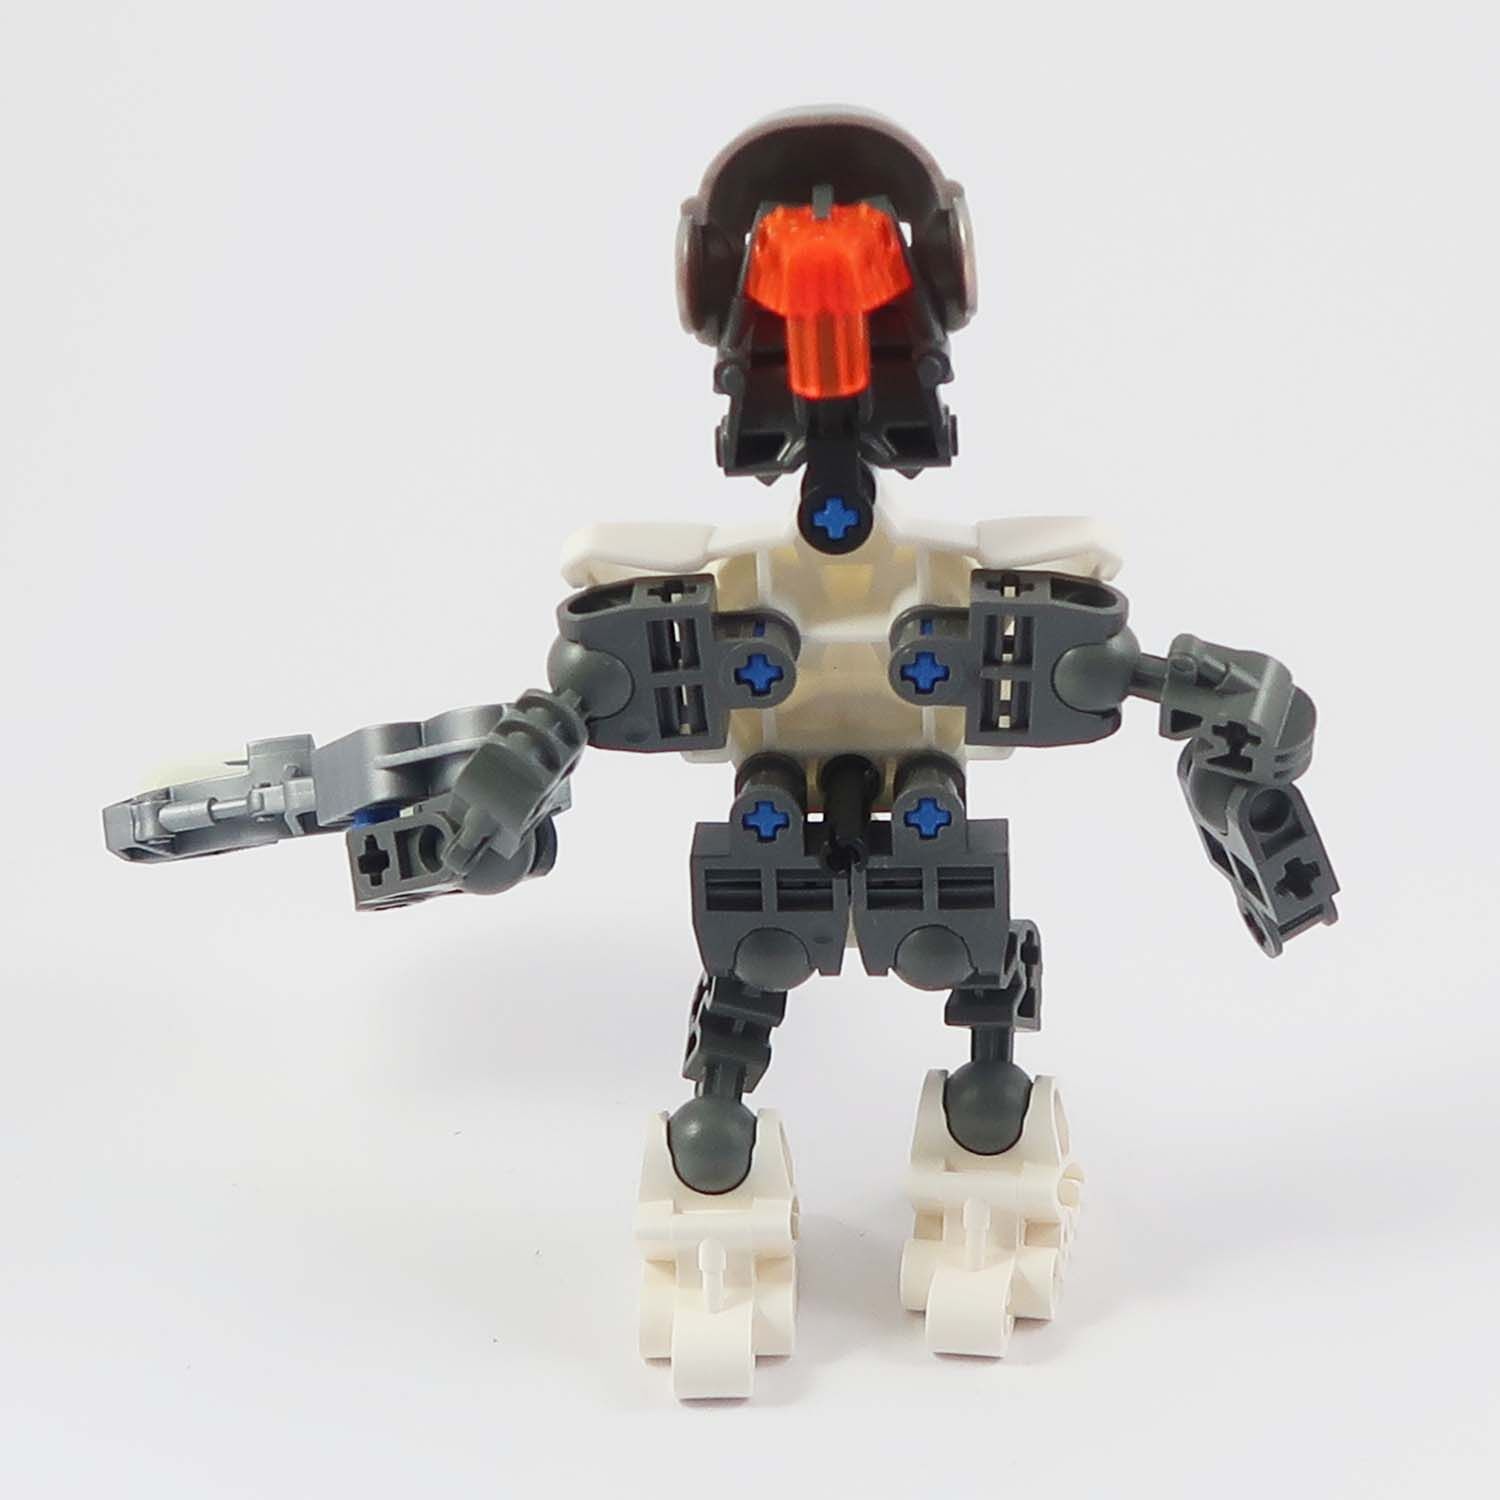 LEGO Bionicle - Matoran Ehrye (8612)